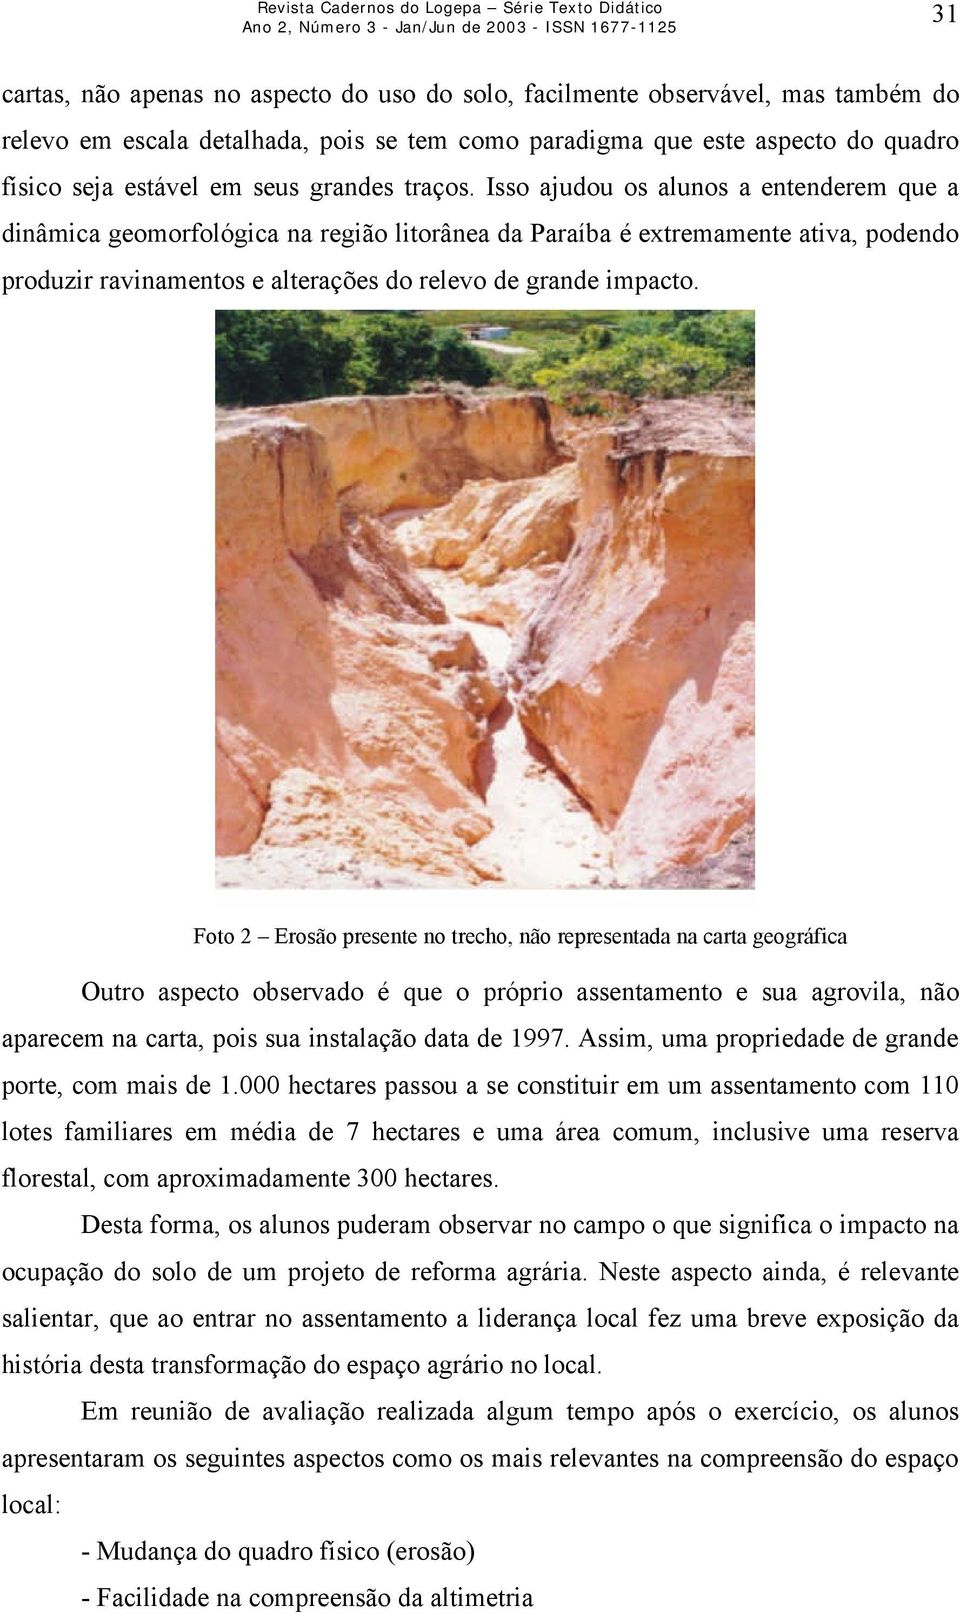 Isso ajudou os alunos a entenderem que a dinâmica geomorfológica na região litorânea da Paraíba é extremamente ativa, podendo produzir ravinamentos e alterações do relevo de grande impacto.